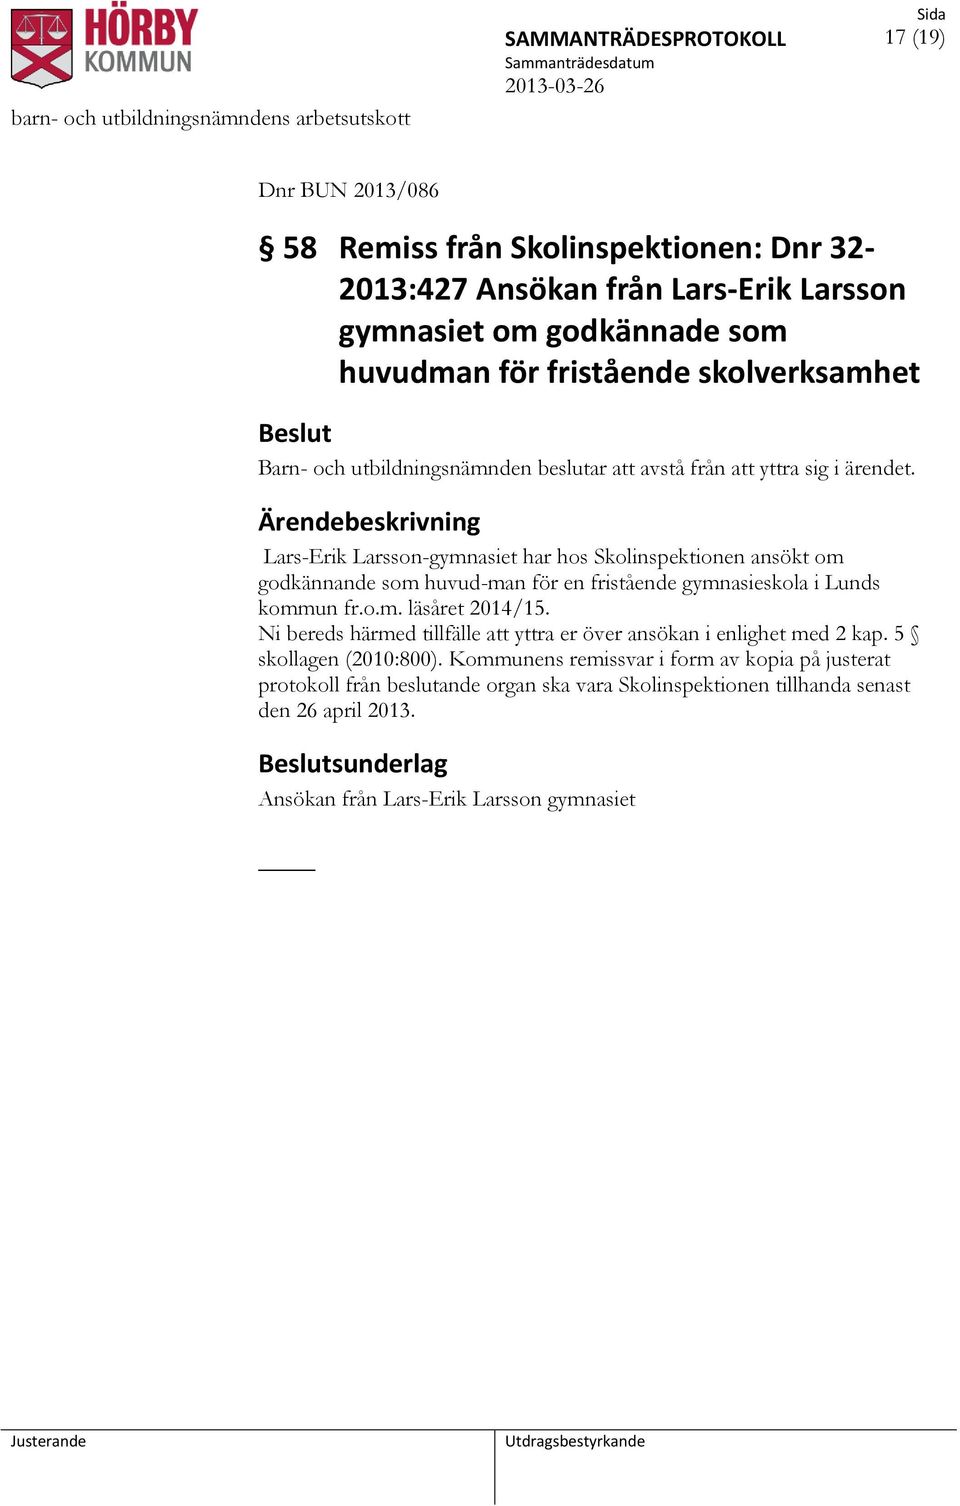 Lars-Erik Larsson-gymnasiet har hos Skolinspektionen ansökt om godkännande som huvud-man för en fristående gymnasieskola i Lunds kommun fr.o.m. läsåret 2014/15.